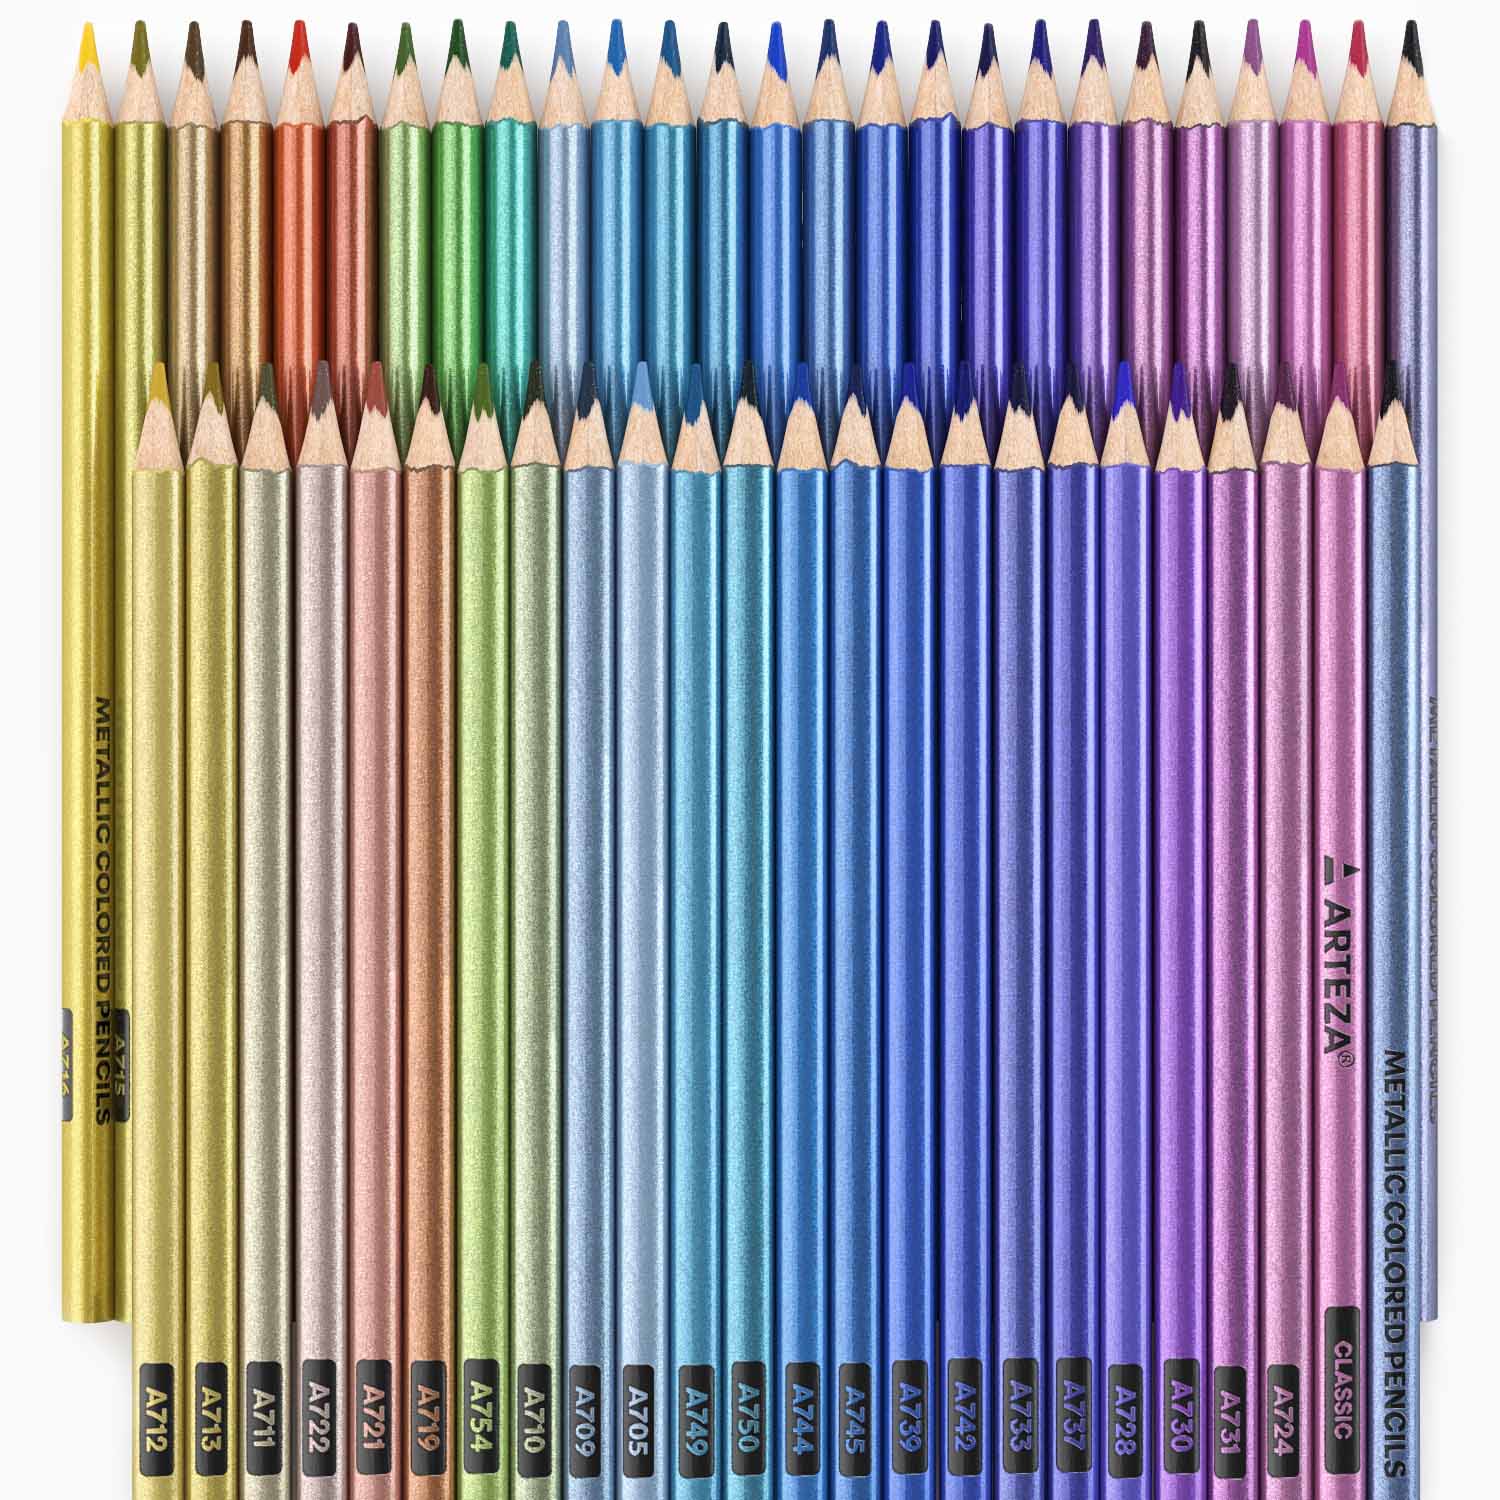 https://arteza.com/cdn/shop/products/metallic-colored-pencils-set-of-50_aXK70y1V.jpg?v=1668716456&width=1946